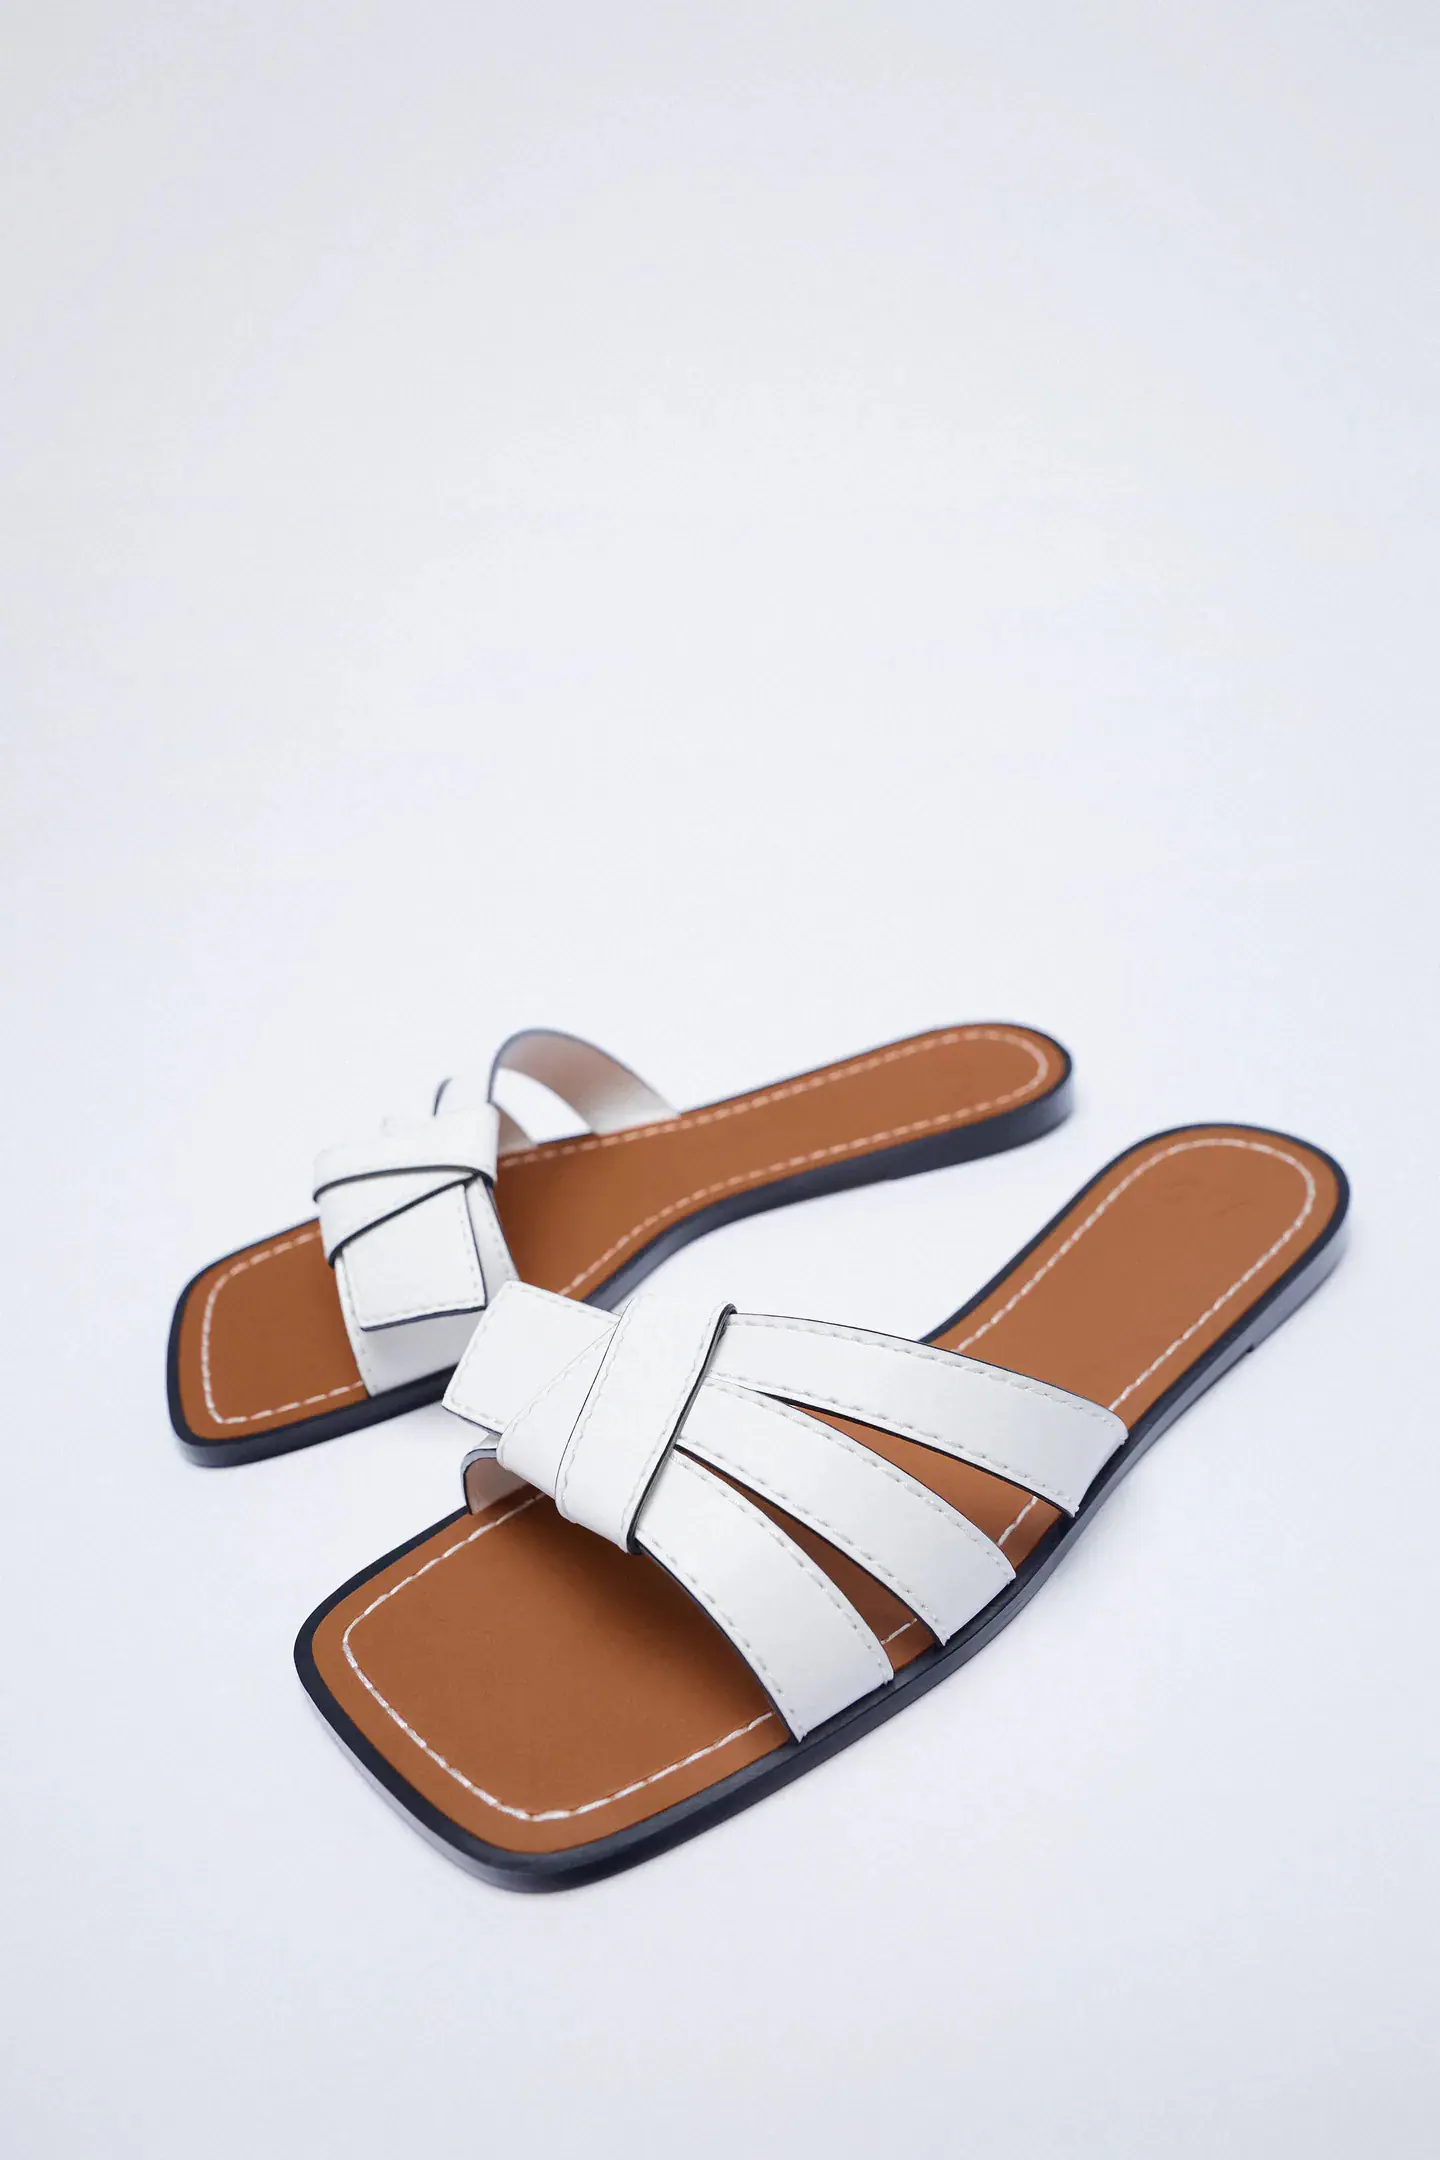 Fotos: sandalias blancas más cómodas y ponibles de anticipan el calor ya nos hacen soñar con el verano | Mujer Hoy